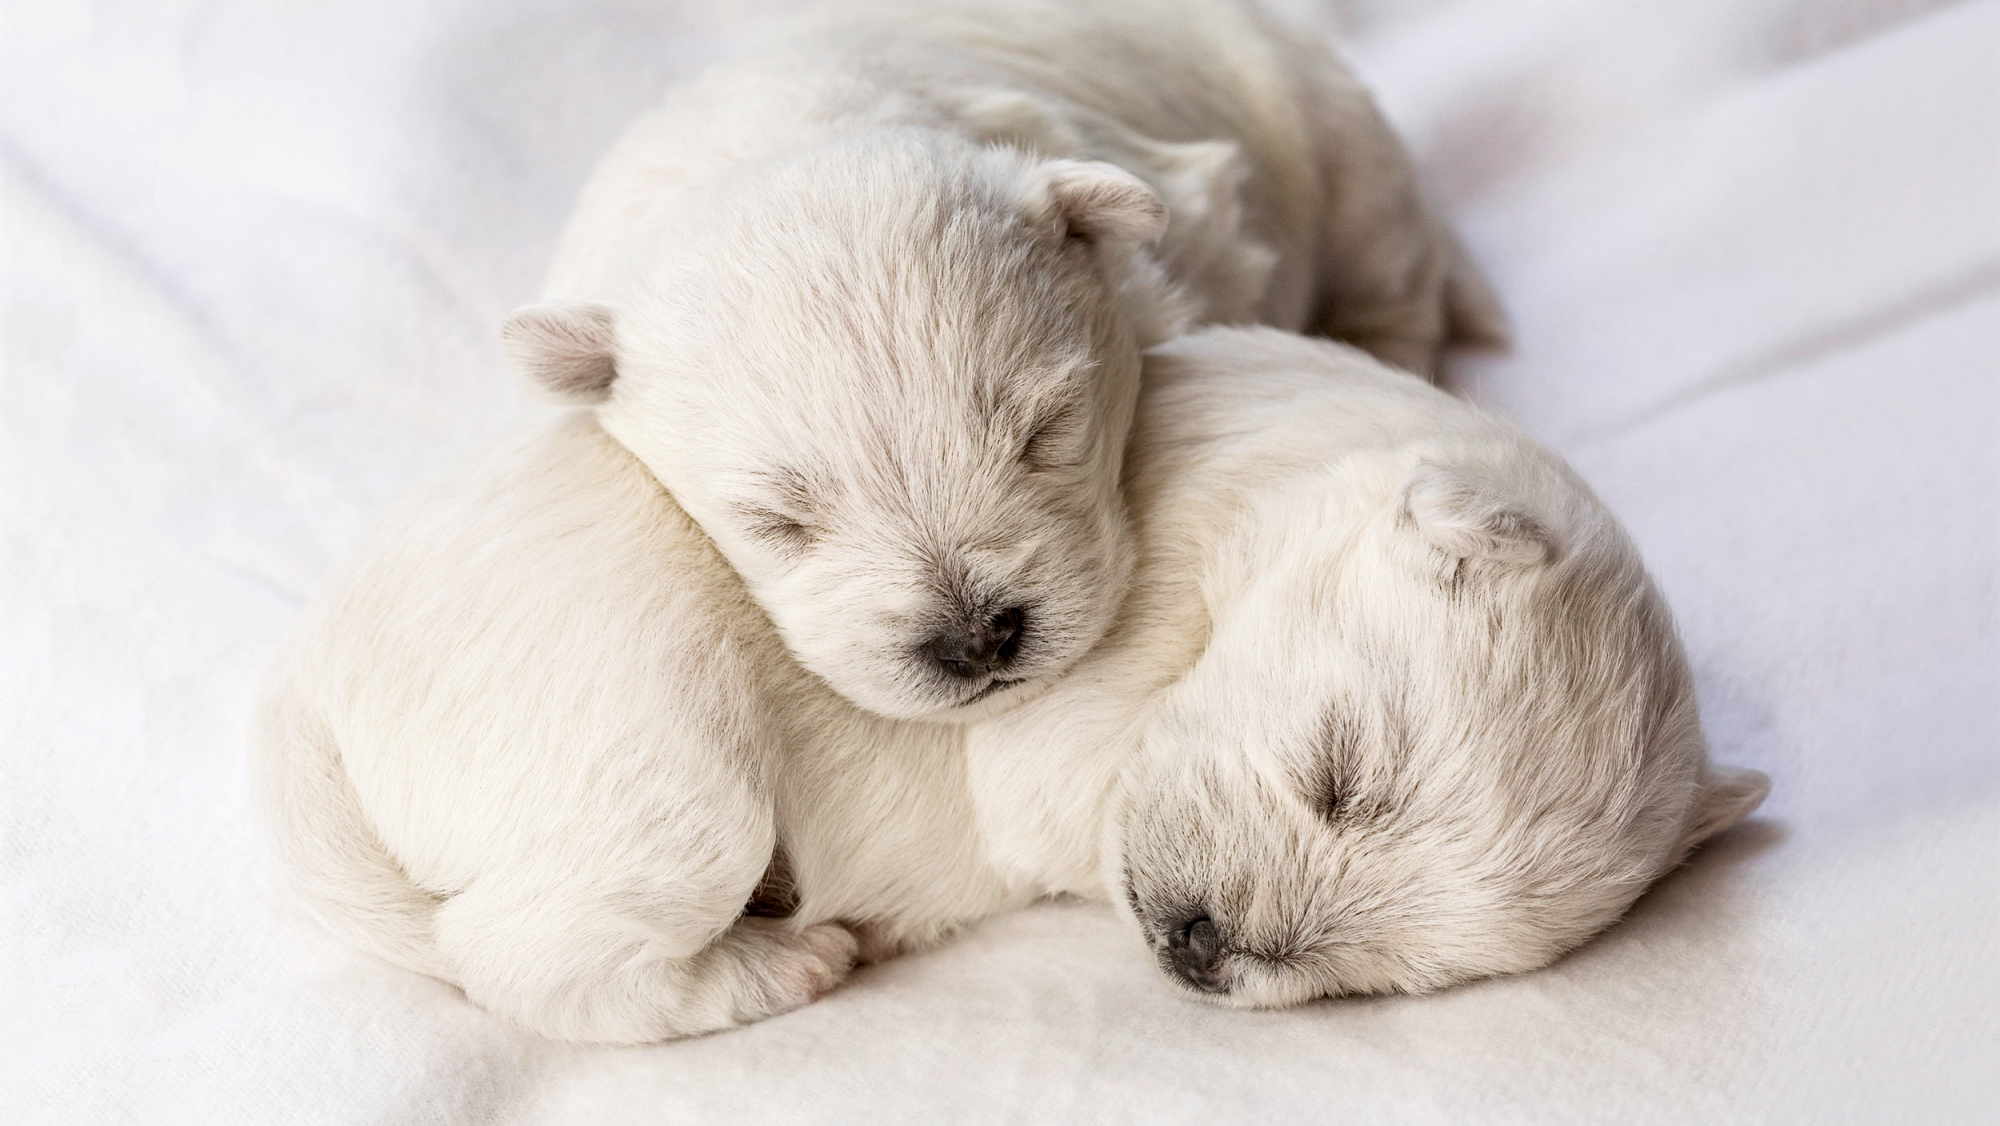 Cuccioli neonati che dormono